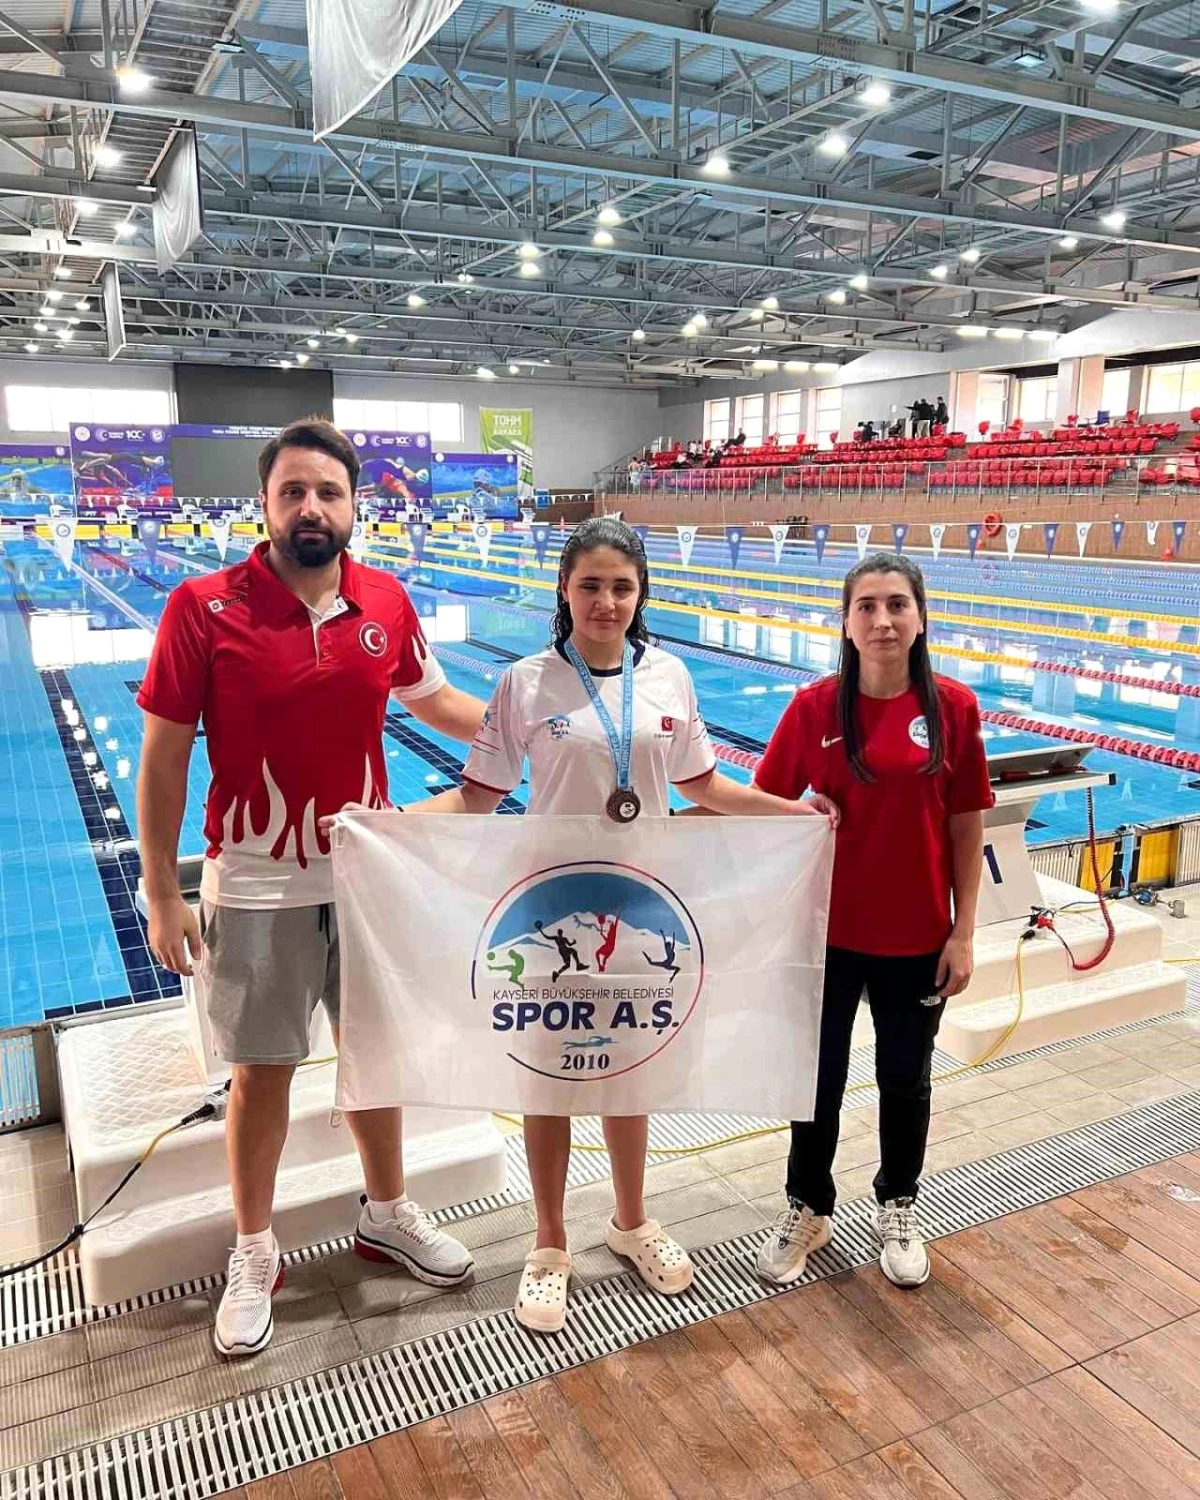 Cemre Ateş, Para Yüzme ve Deaf Yüzme Seçmelerinde 2 Gümüş Madalya Kazandı